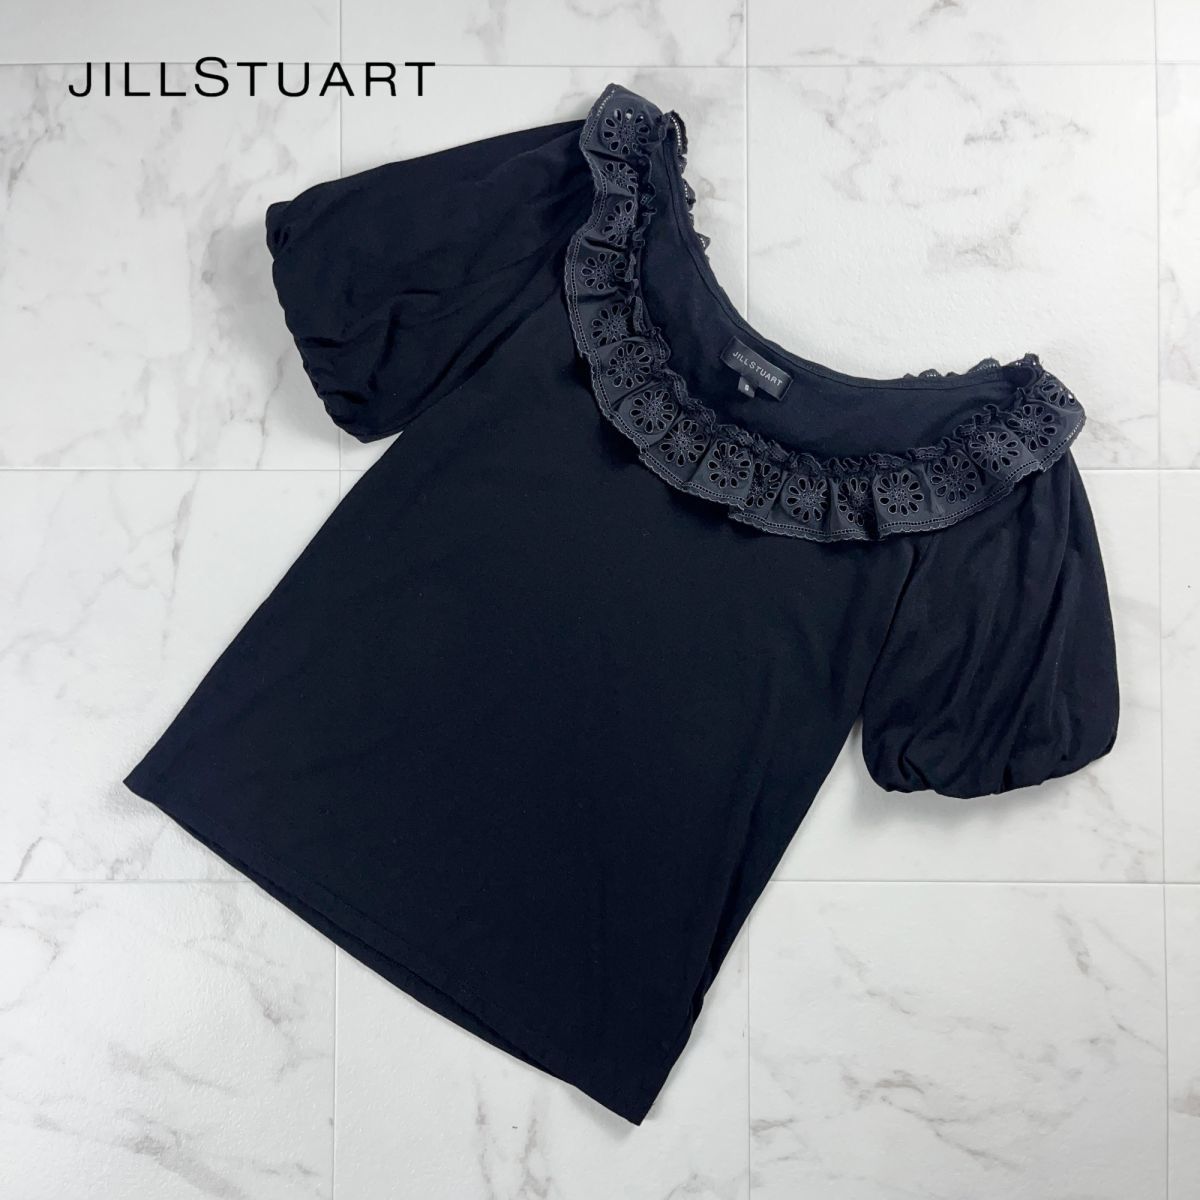 JILL STUART Jill Stuart воротник имеется футболка короткий рукав tops женский чёрный черный размер S*MC1005